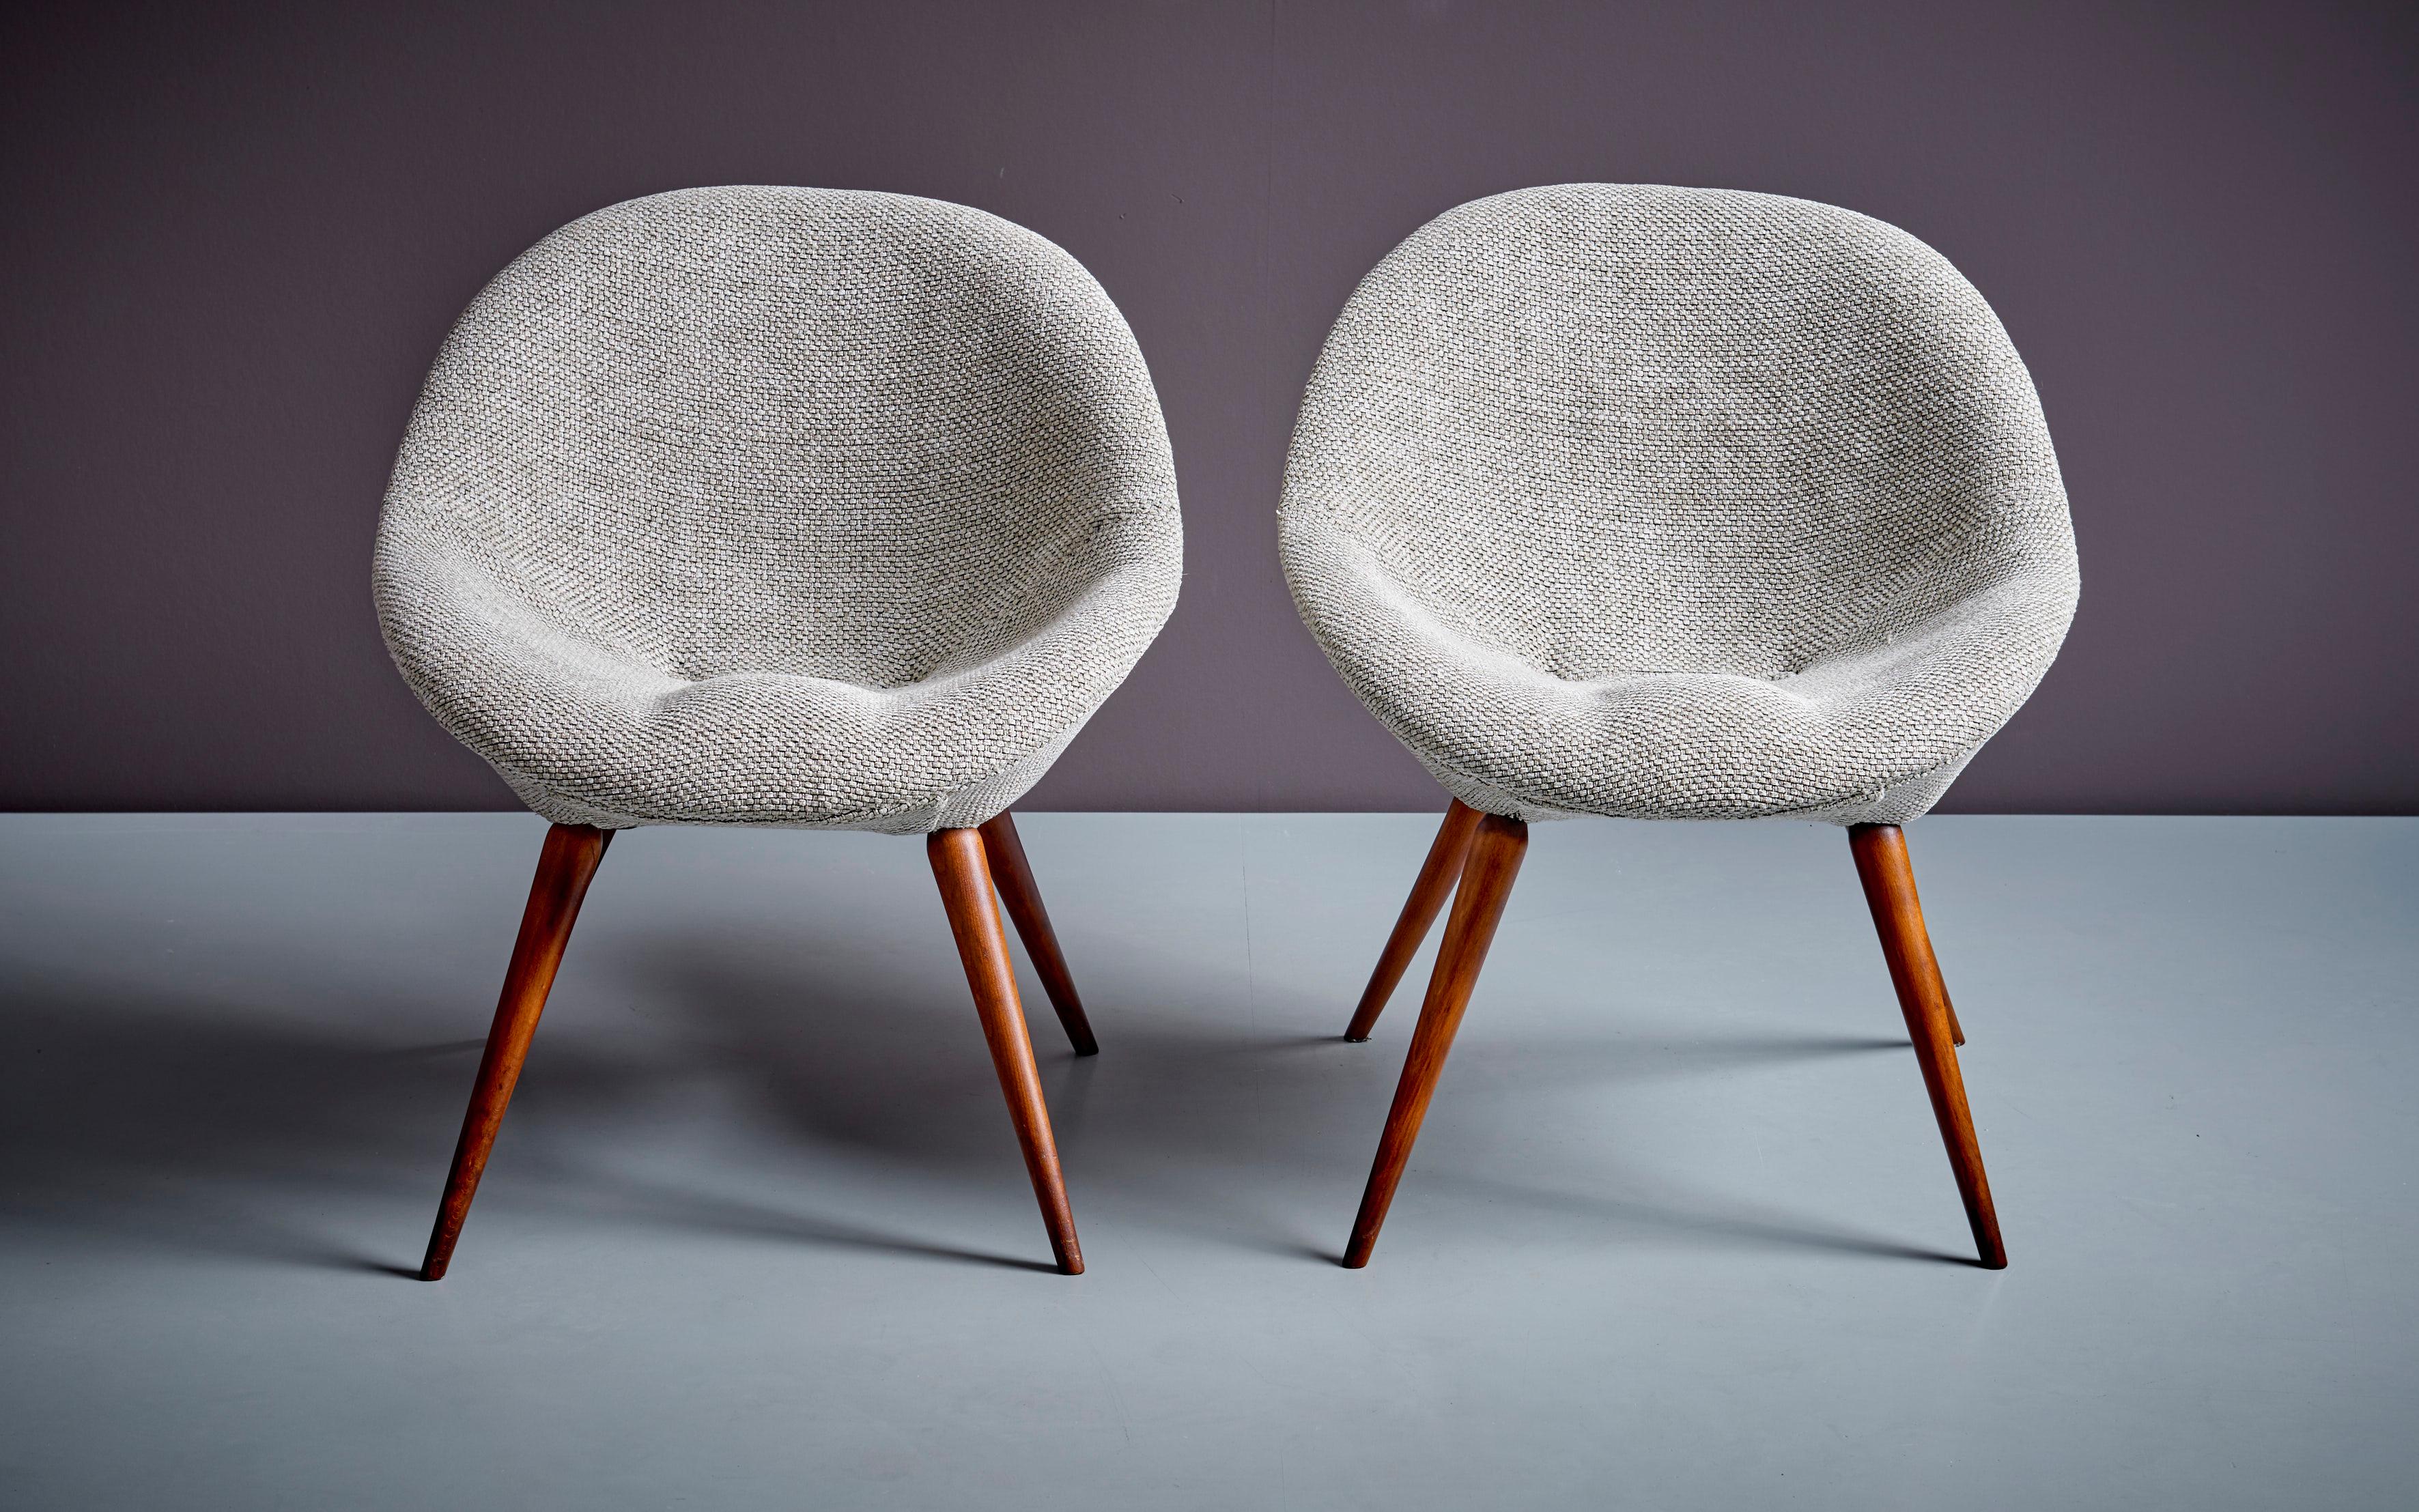 Paire de chaises longues Fritz Neth en gris, Allemagne - années 1960. Ces chaises Fritz Neth se caractérisent par un design épuré et une fabrication de haute qualité, alliés à la fois à la flexibilité et au confort. Neth est un designer de meubles